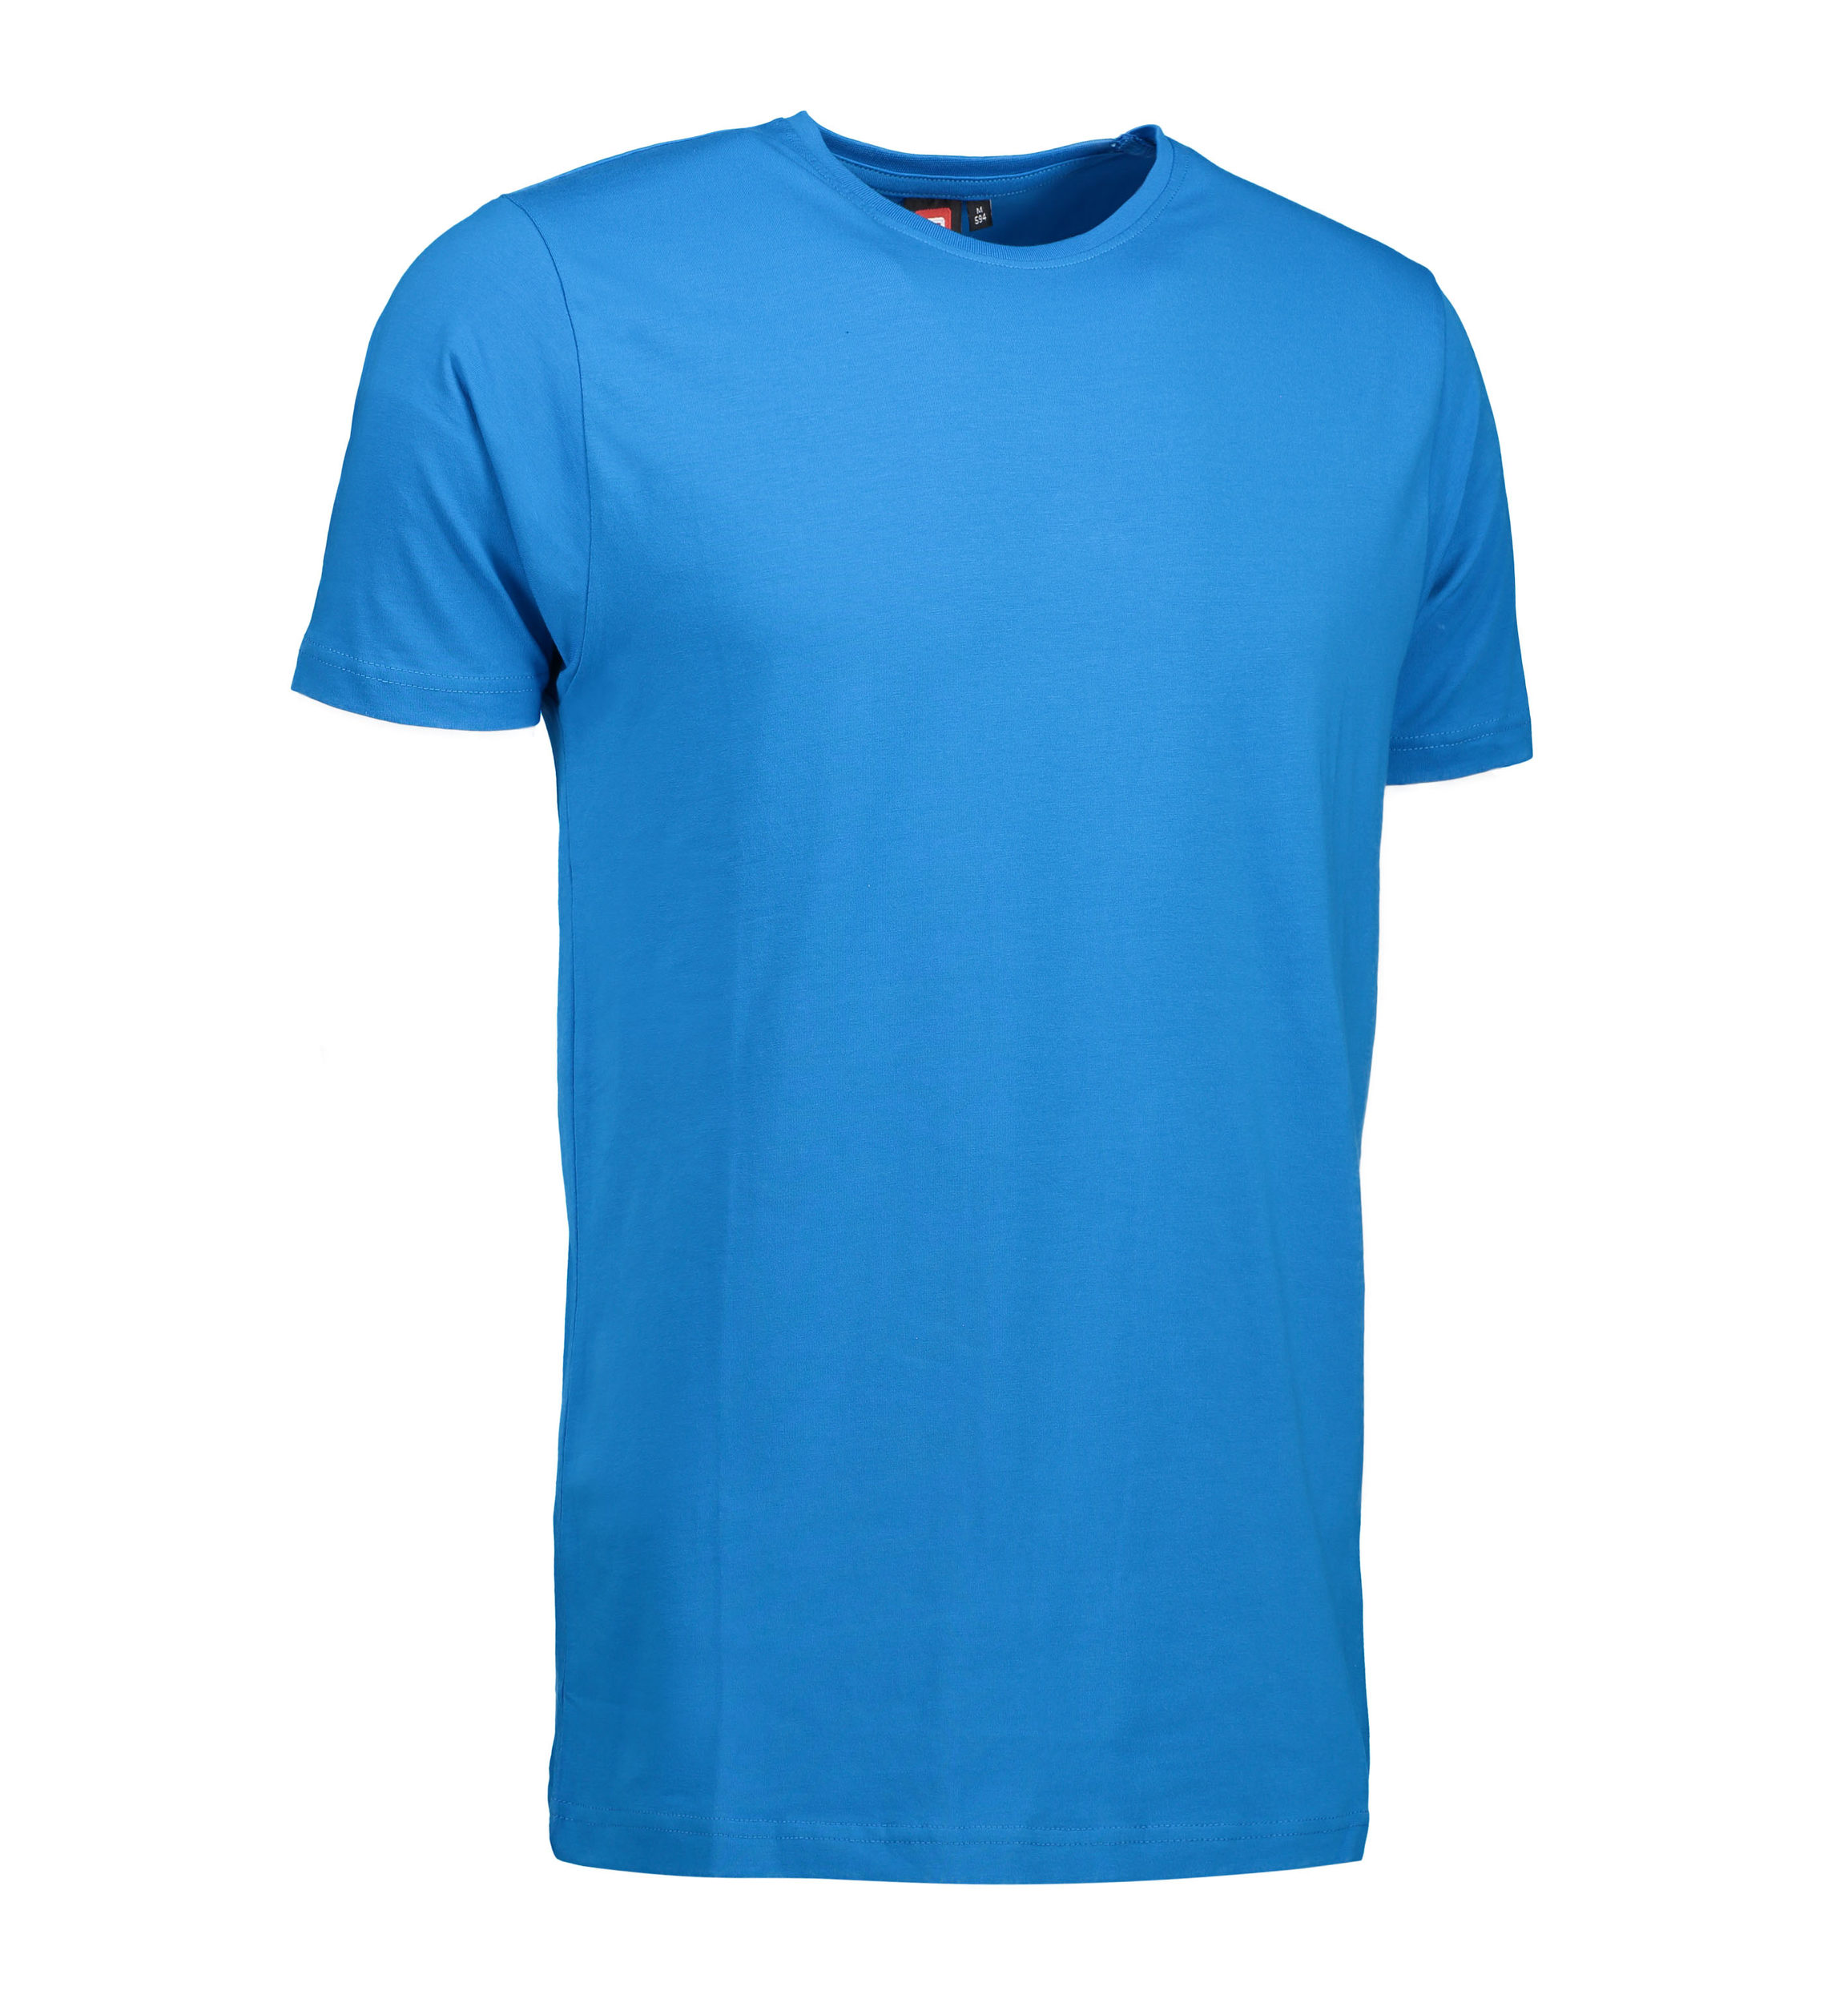 Se Stretch t-shirt til mænd i turkis - XL hos Sygeplejebutikken.dk